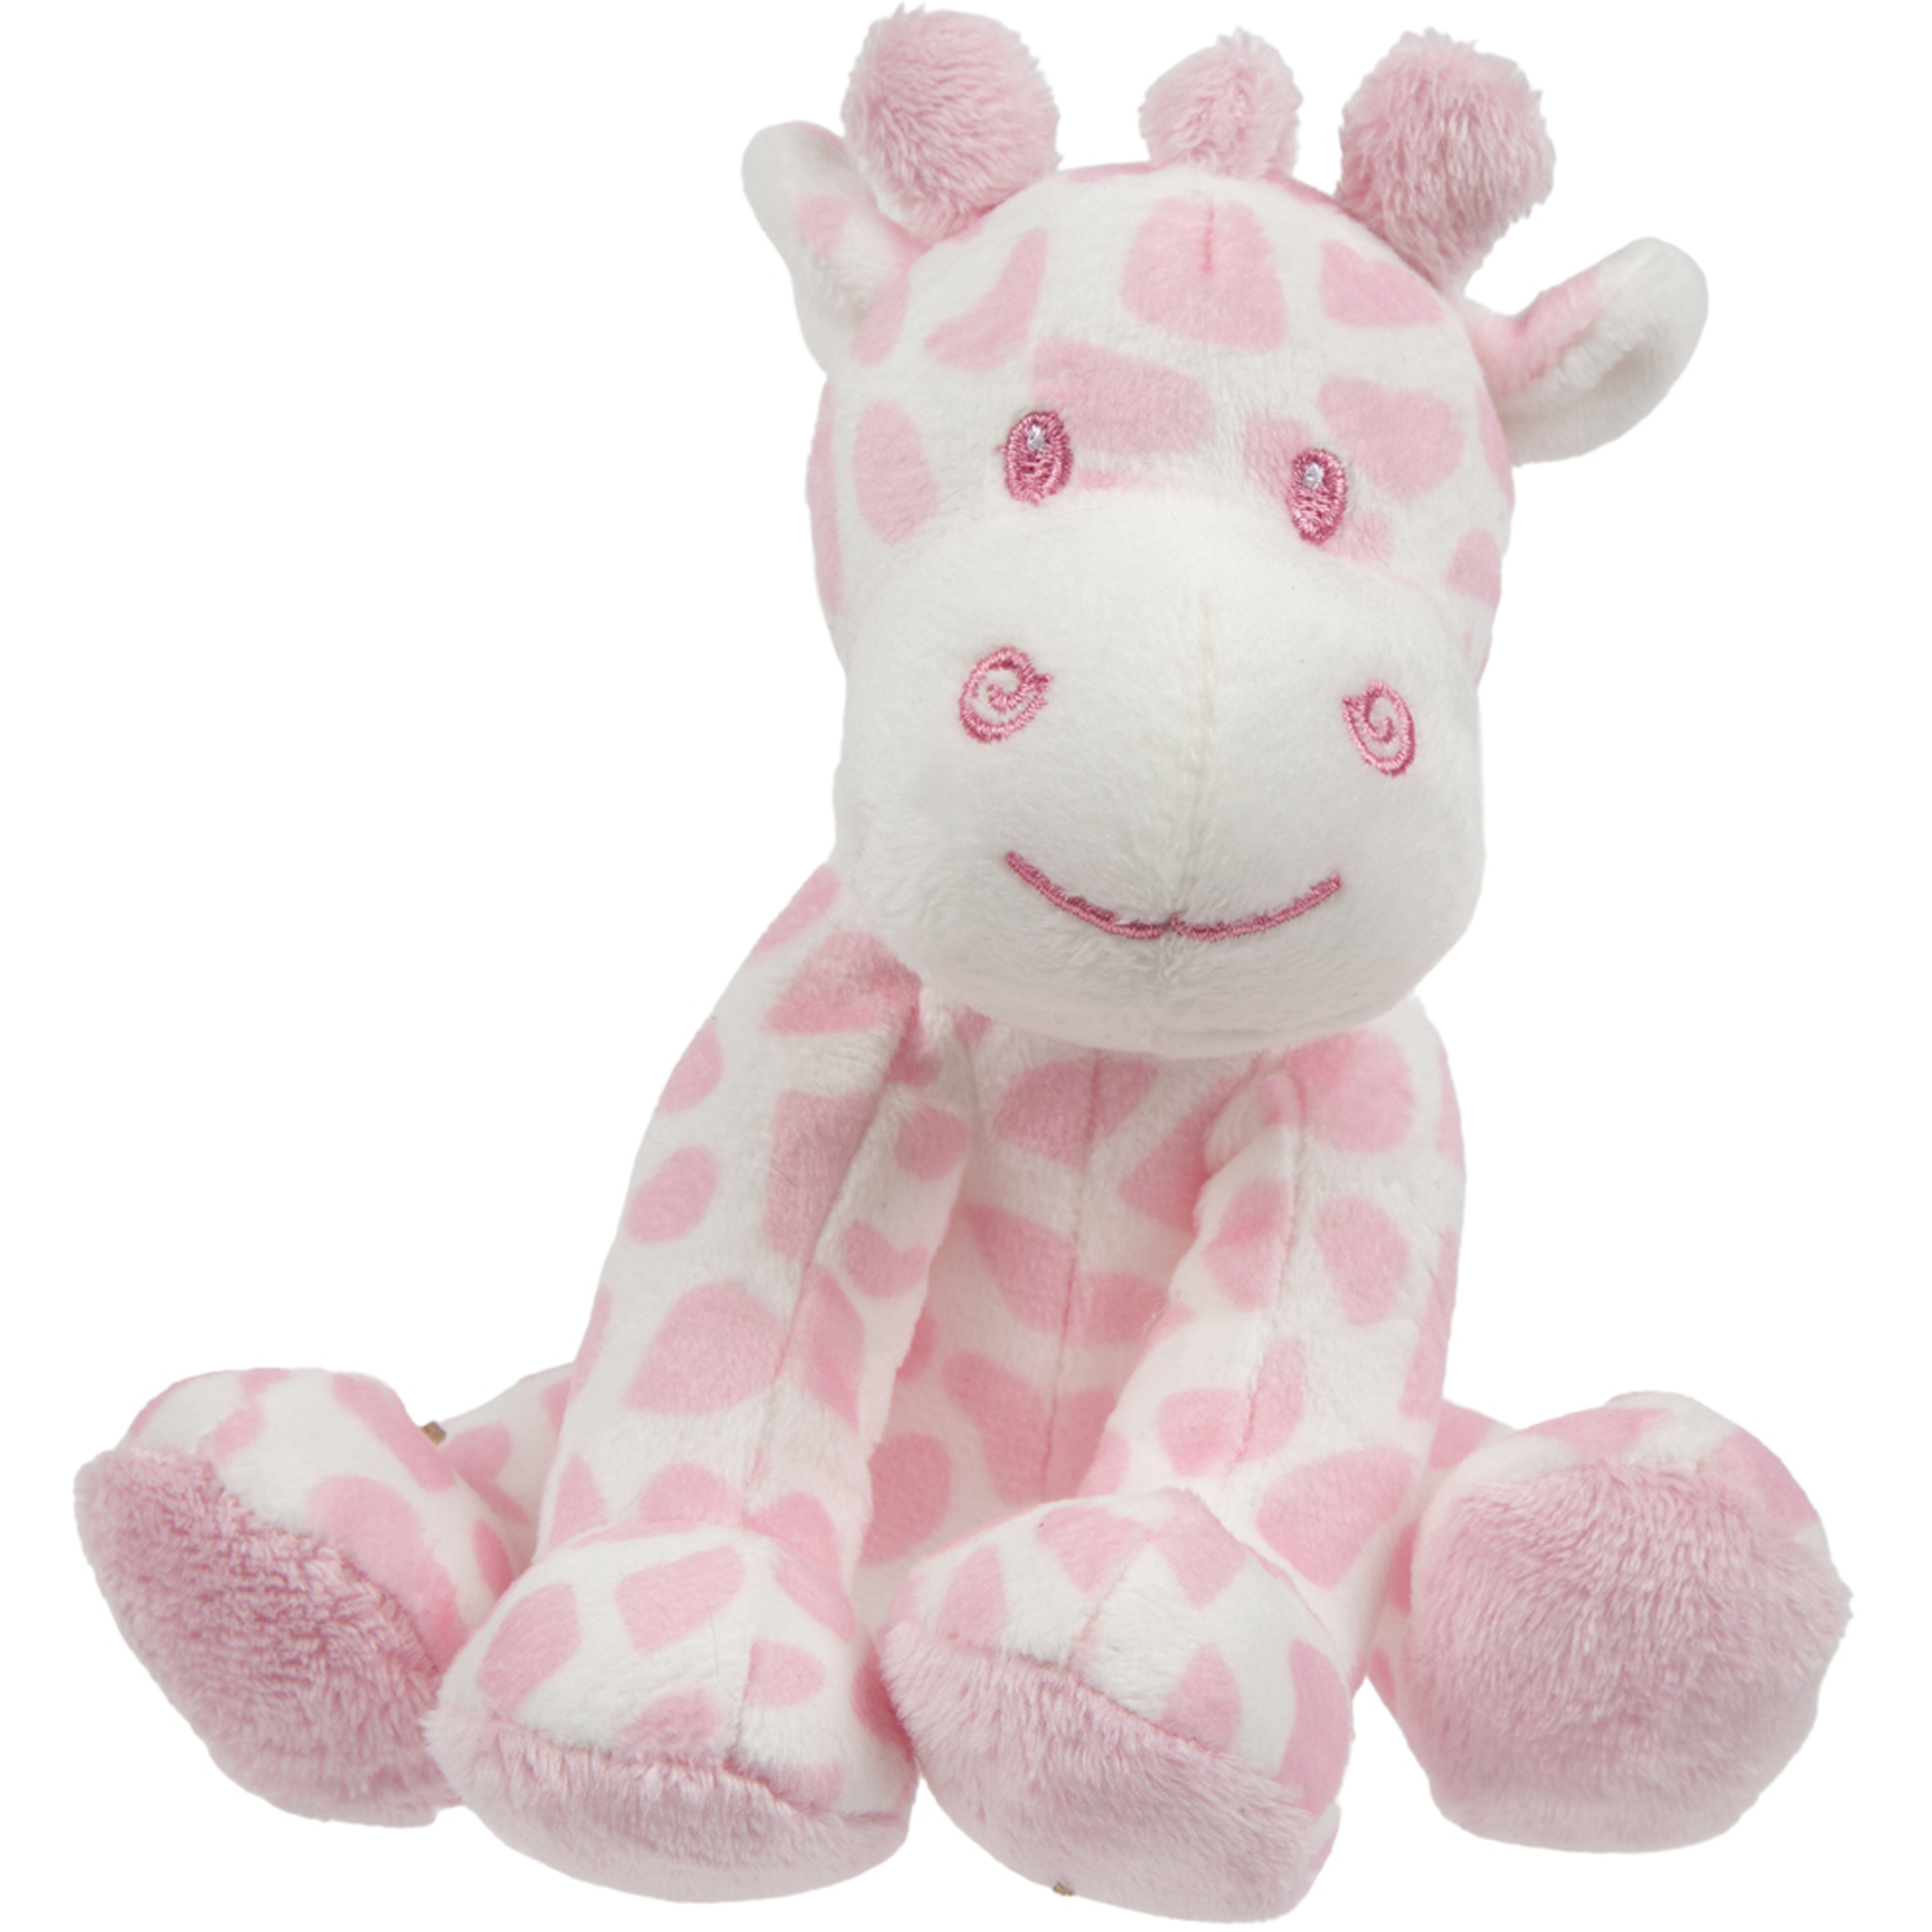 Suki Gifts pluche gevlekte giraffe knuffeldier roze-wit zittend 14 cm